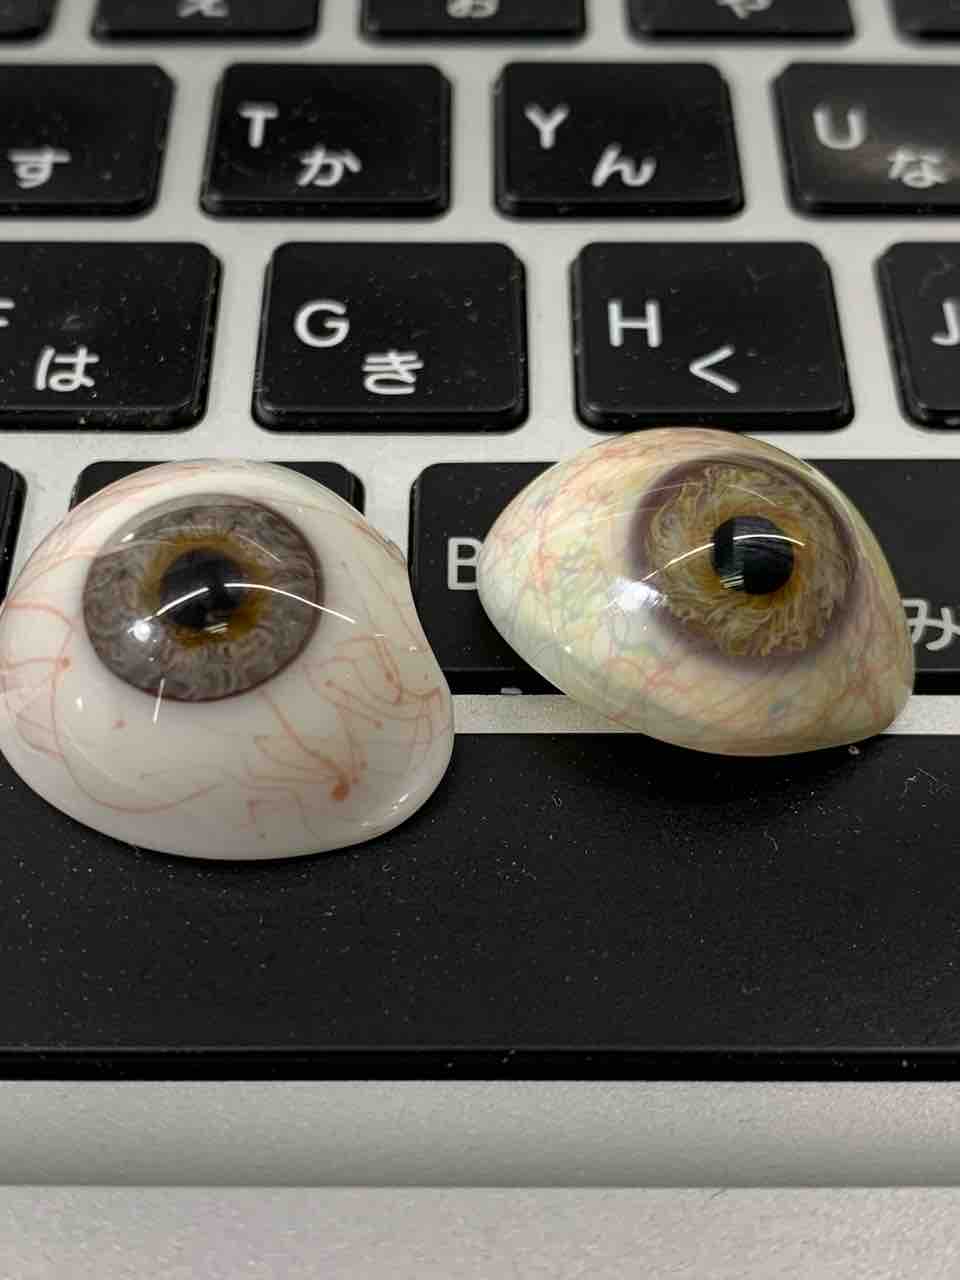 ガラスの義眼 やさしい義眼のつくりかた How To Make Artificial Eye And Prosthesis